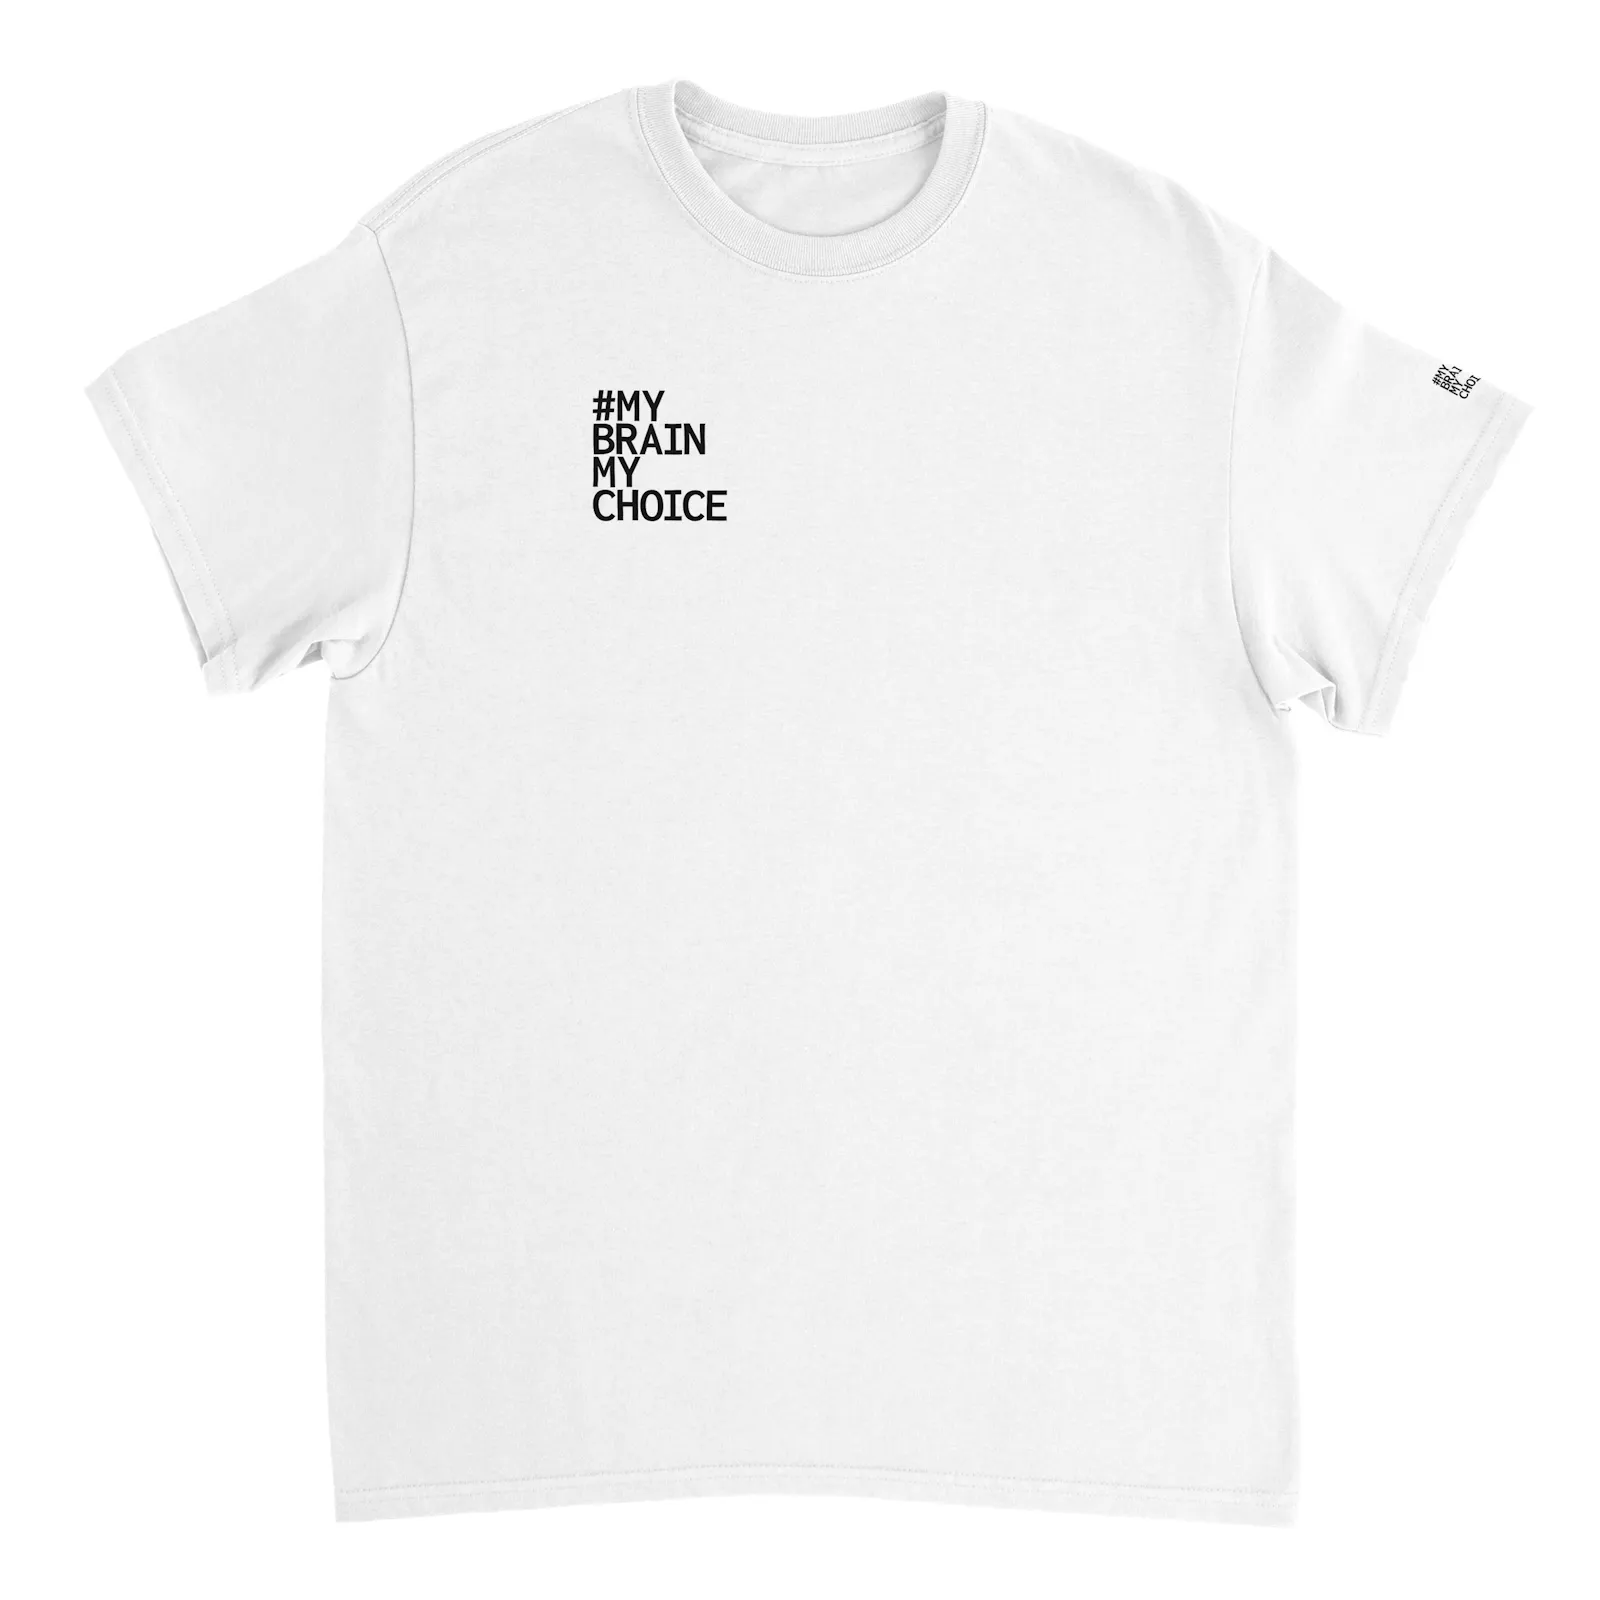 Klassisches weißes T-Shirt mit 3 schwarzen My Brain My Choice Logos. Aus der Eigenperspektive vorne rechts oben mittelgroß an der Brust, links am Ärmel klein, hinten oben mittig mittelgroß wie vorne.